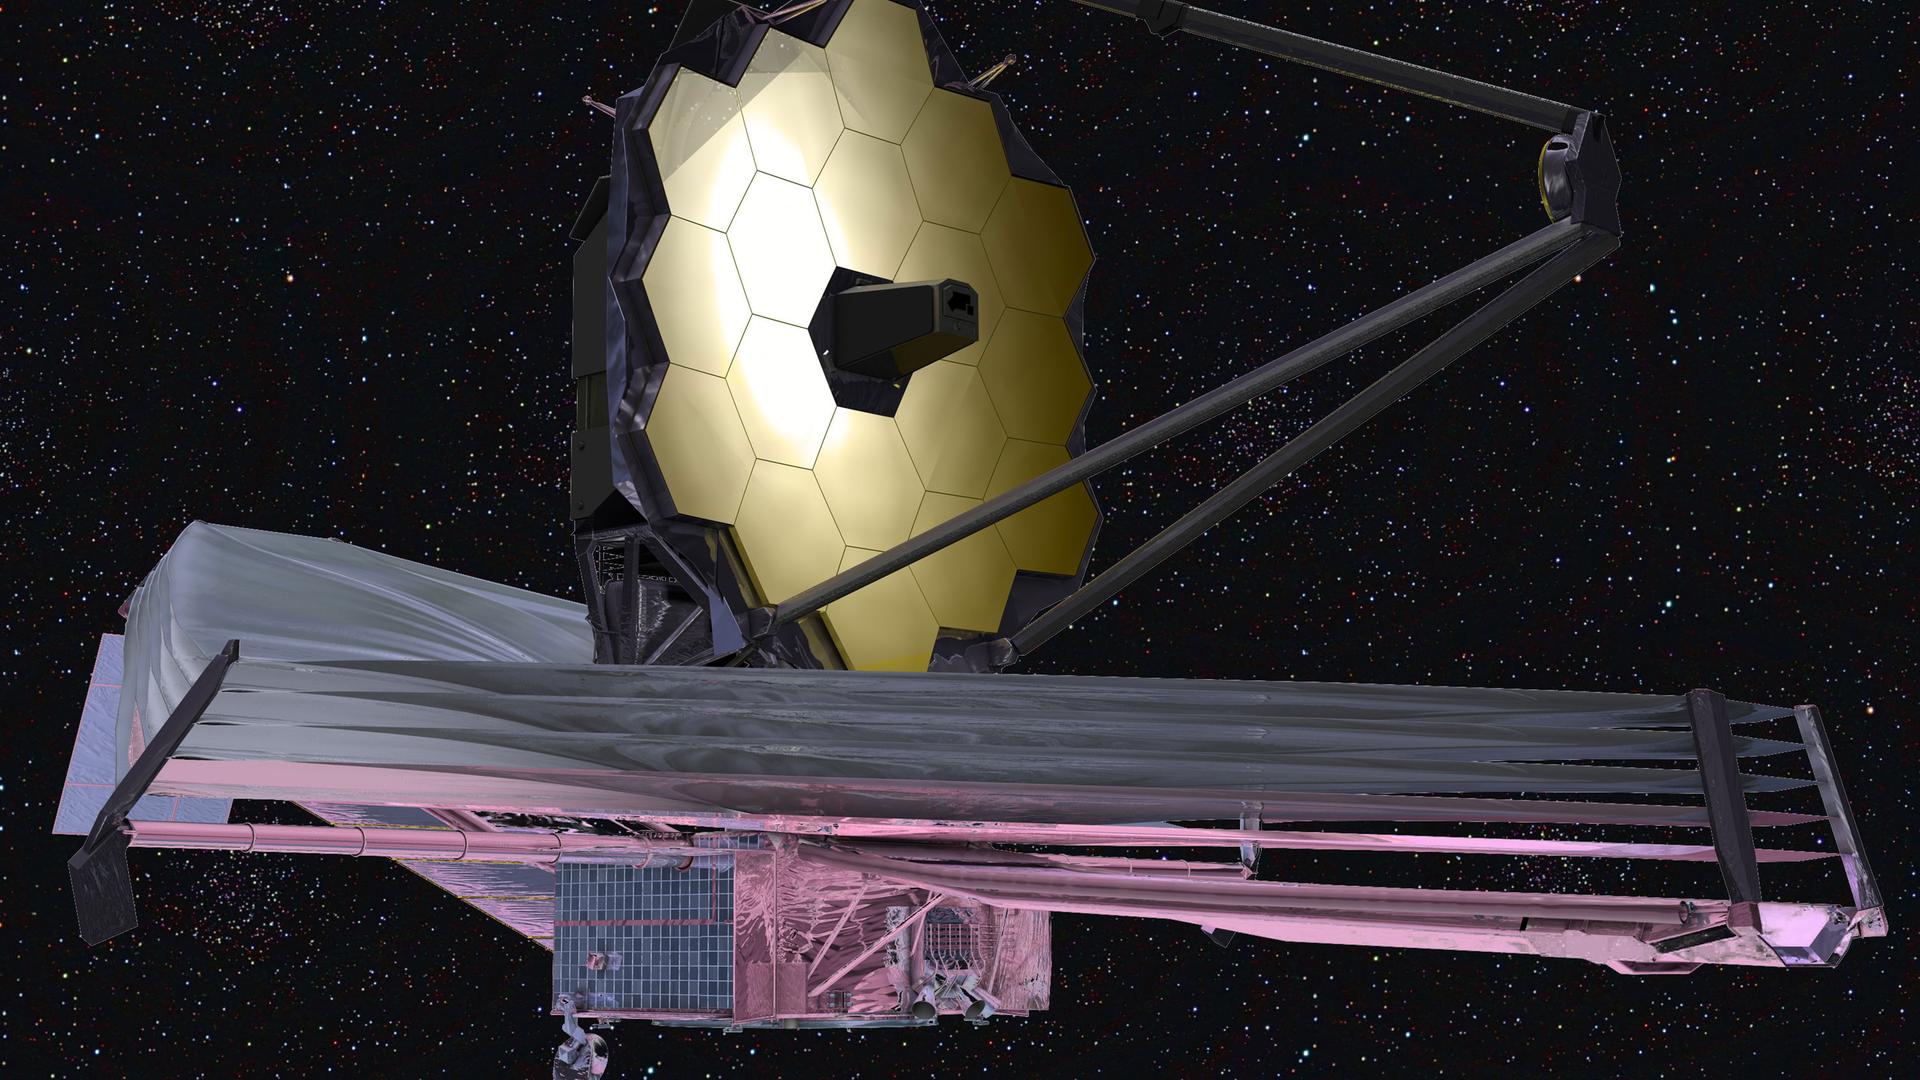 Das nach dem früheren NASA-Chef James Webb benannte Weltraumteleskop (Illustration)